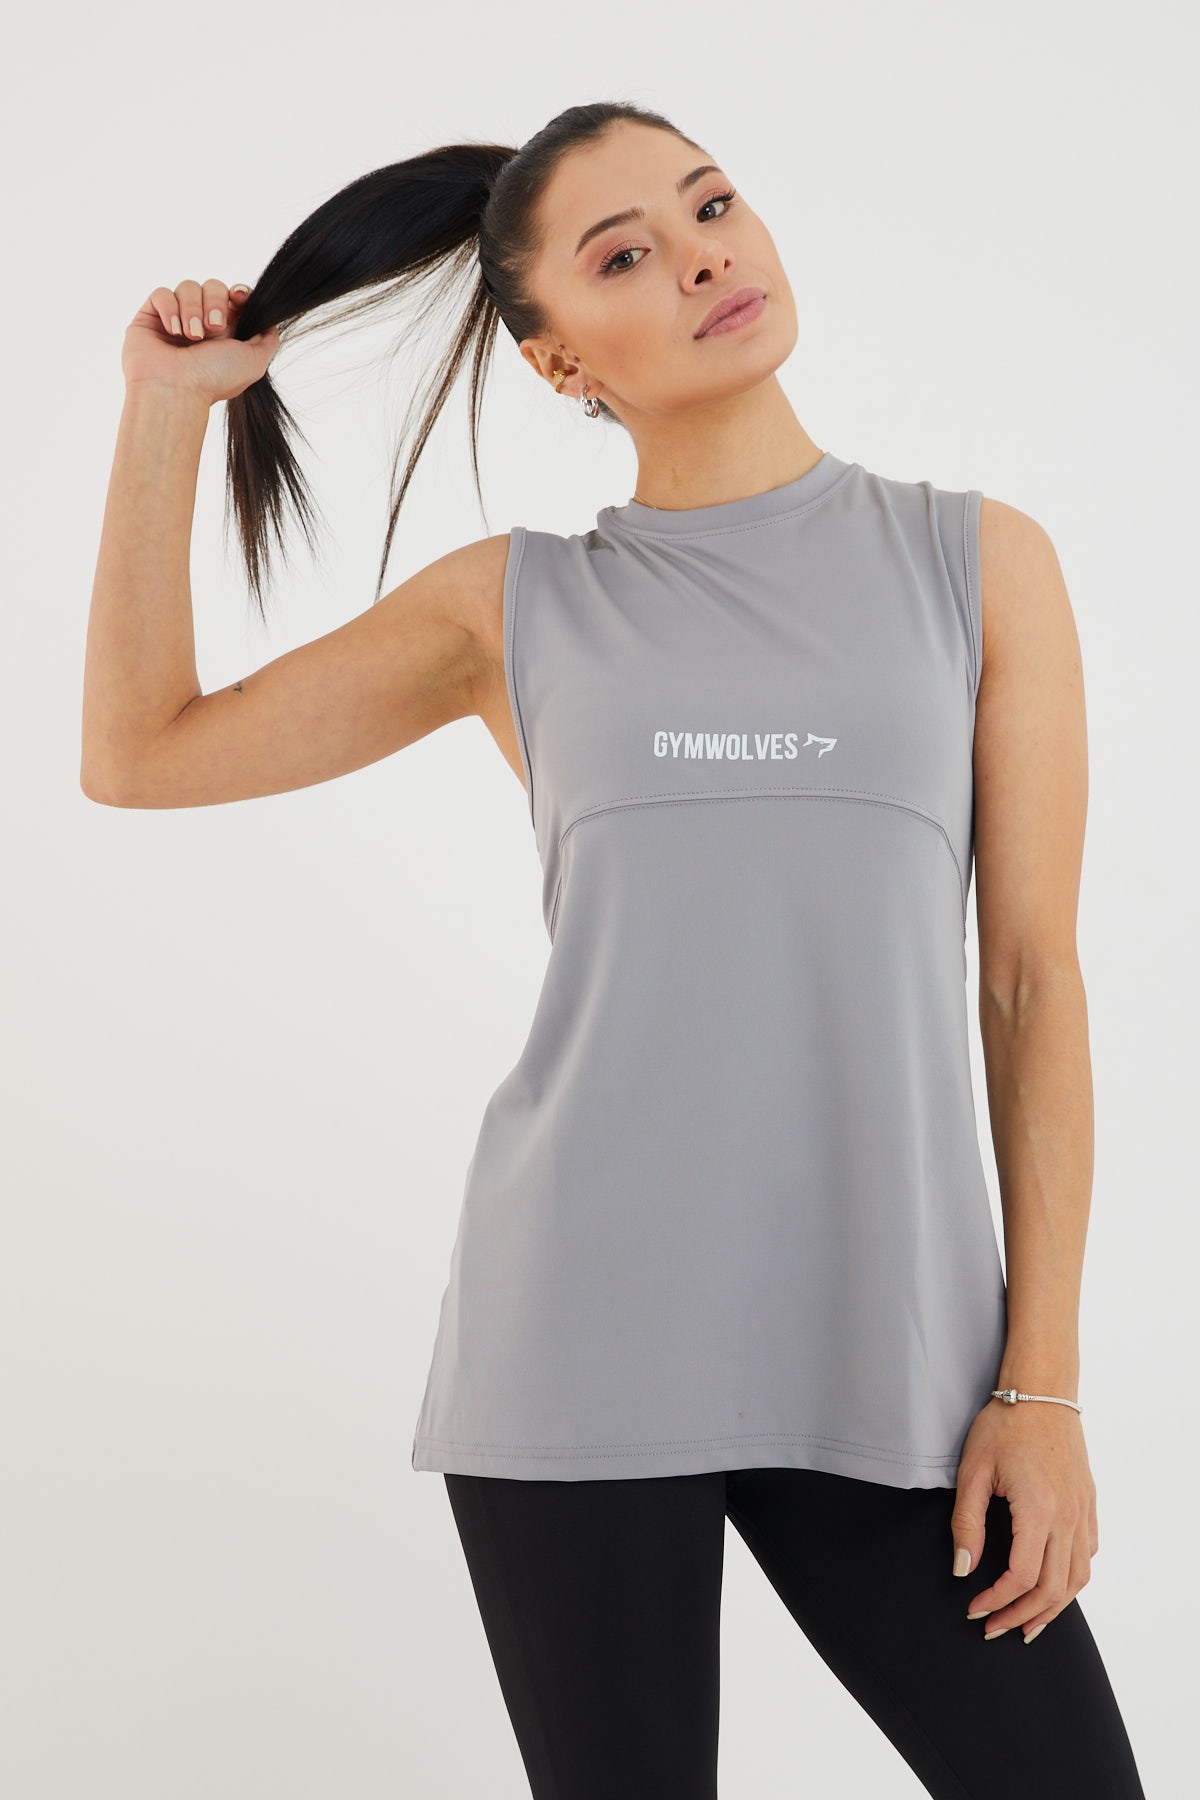 Gymwolves Kadın Spor T-Shirt / Gri | Çift Taraf Giyilebilir Yırtmaçlı